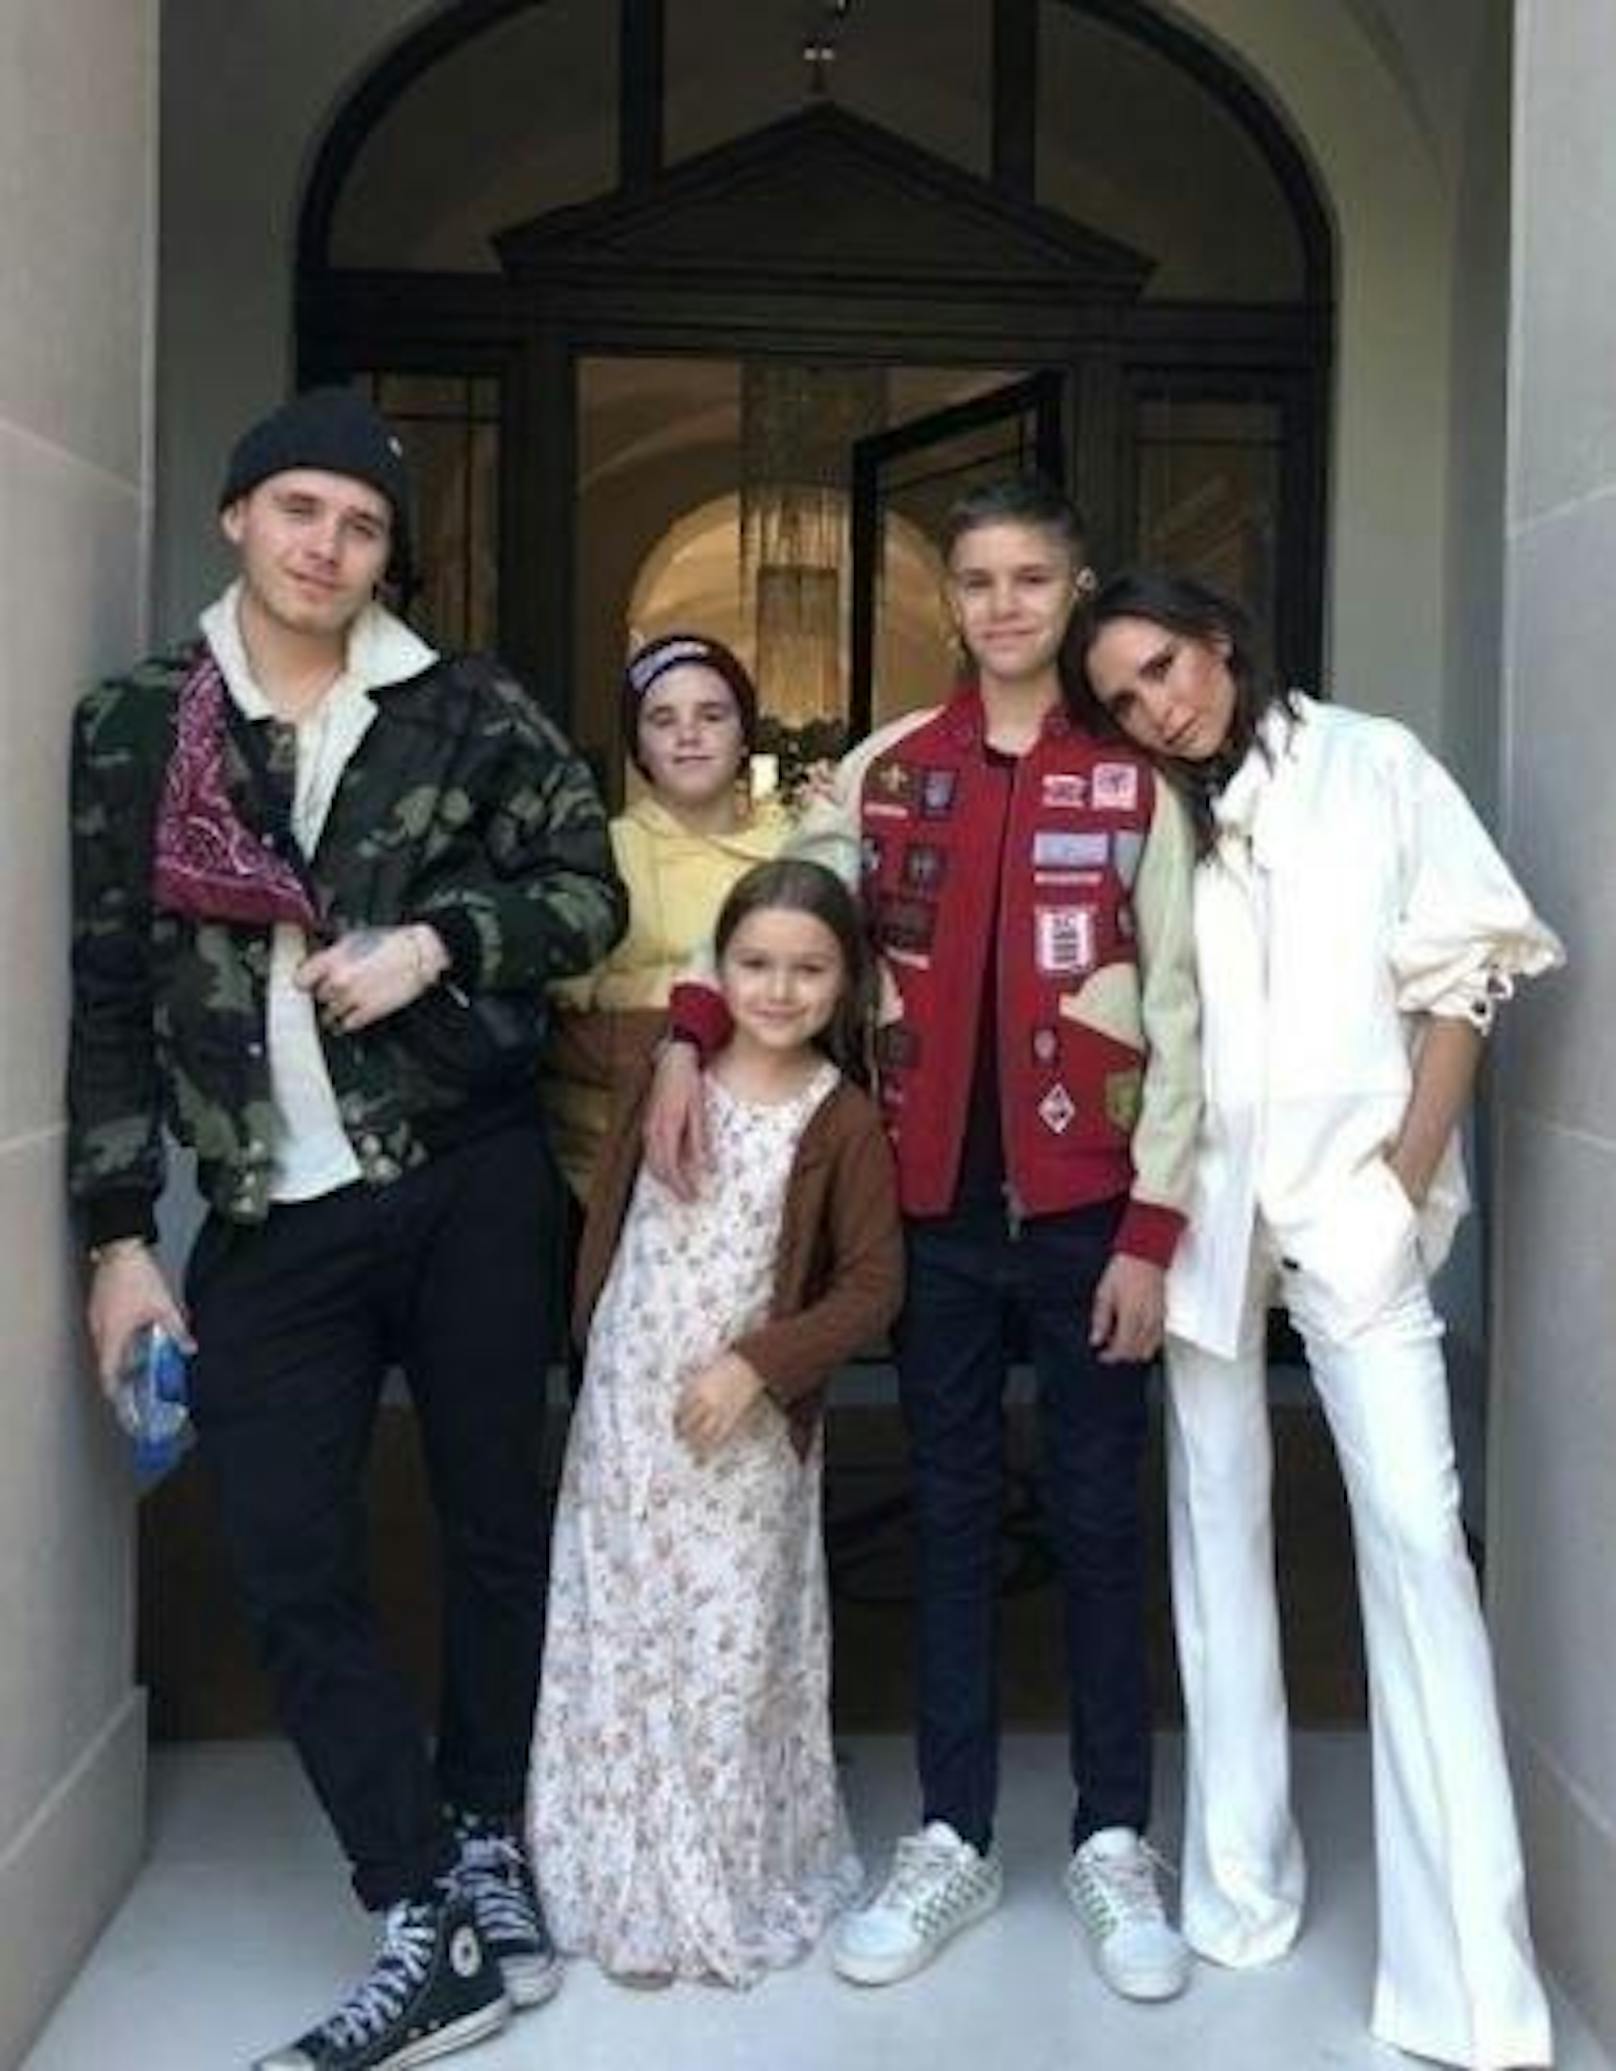 17.04.2018: Am Dienstag wurde Victoria Beckham 44 Jahre alt. Zur Feier des Tages gab's ein Familienfoto mit ihren vier Kids Brooklyn, Romeo, Cruz und Harper (v.). Hinter der Kamera stand ihr Ehemann David Beckham.